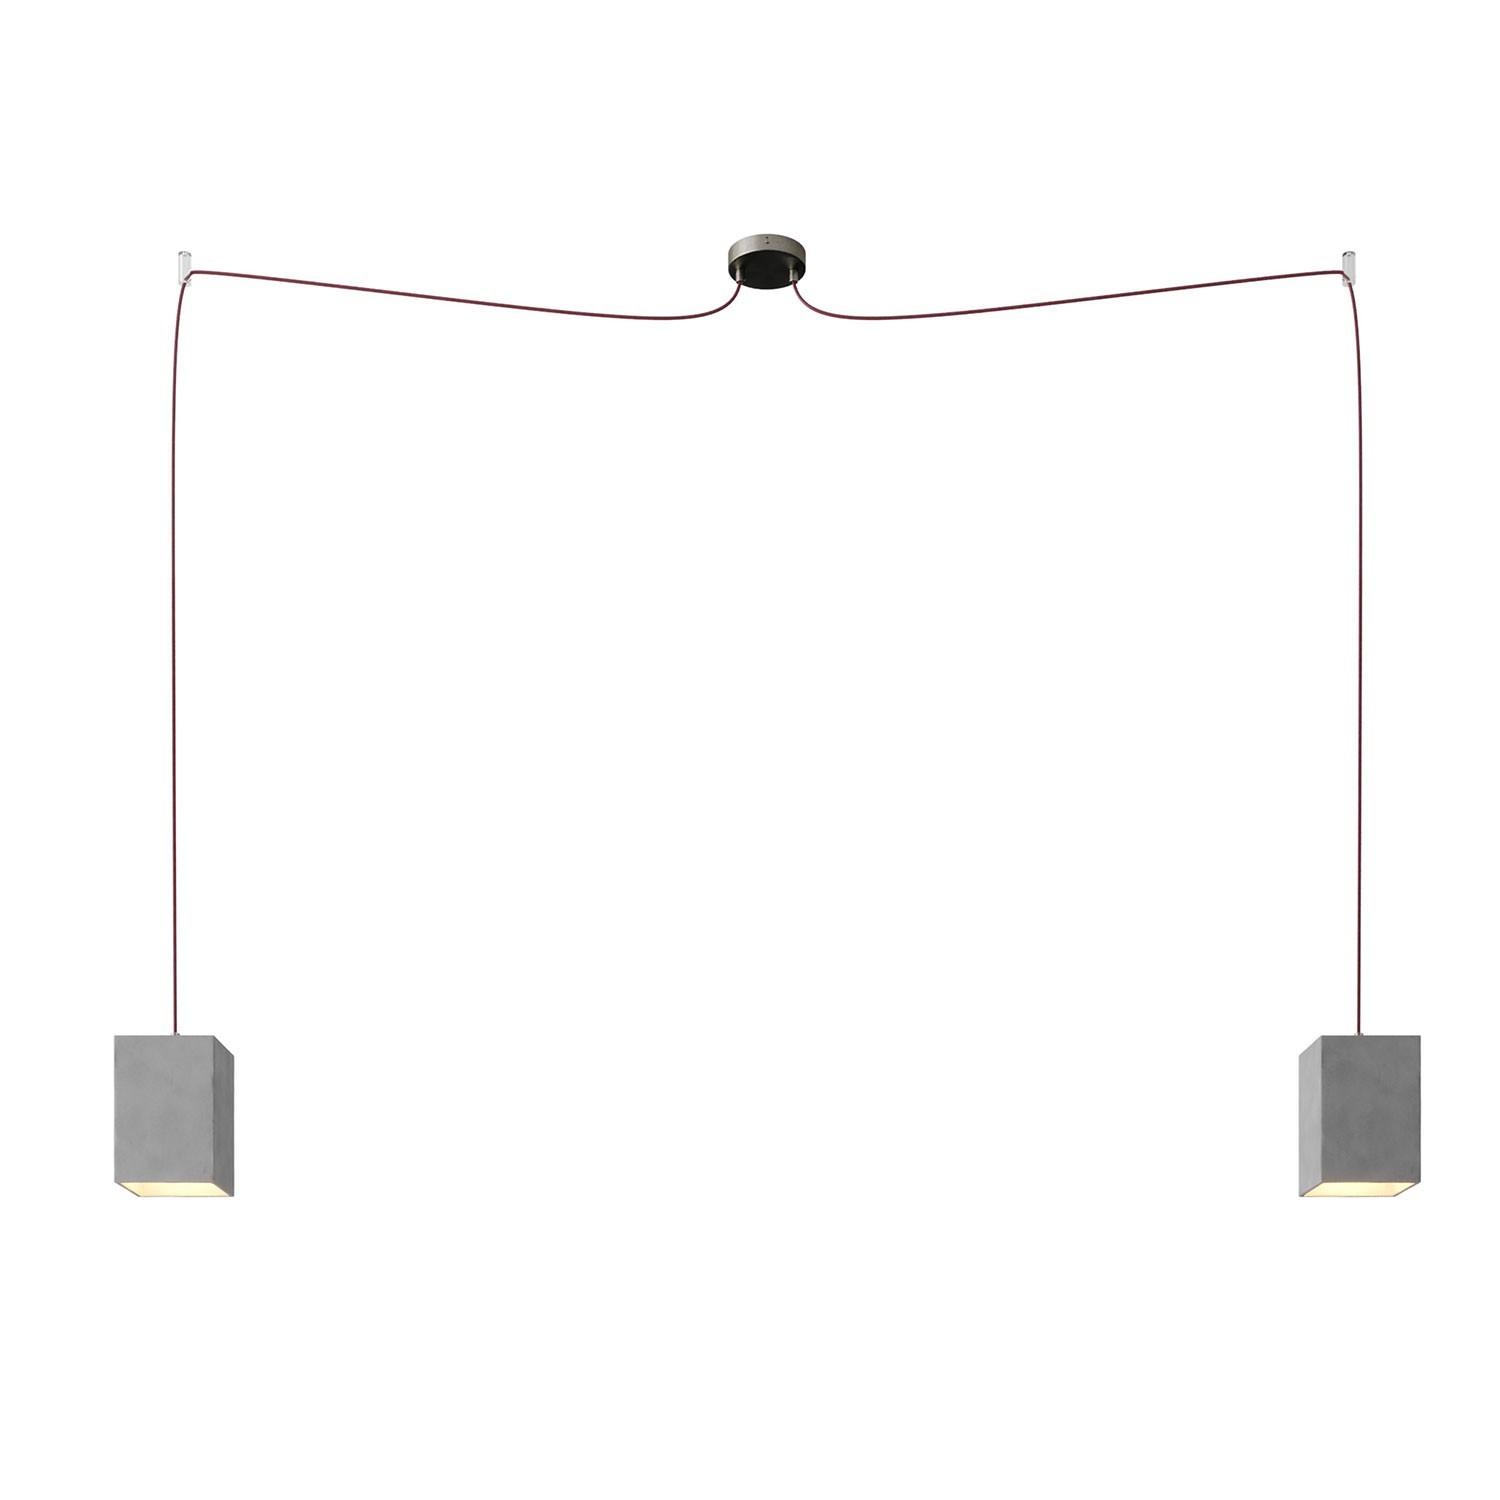 Spider - 2 lichts-meervoudige hanglamp, Made in Italy, compleet met strijkijzersnoer en betonnen lampenkap